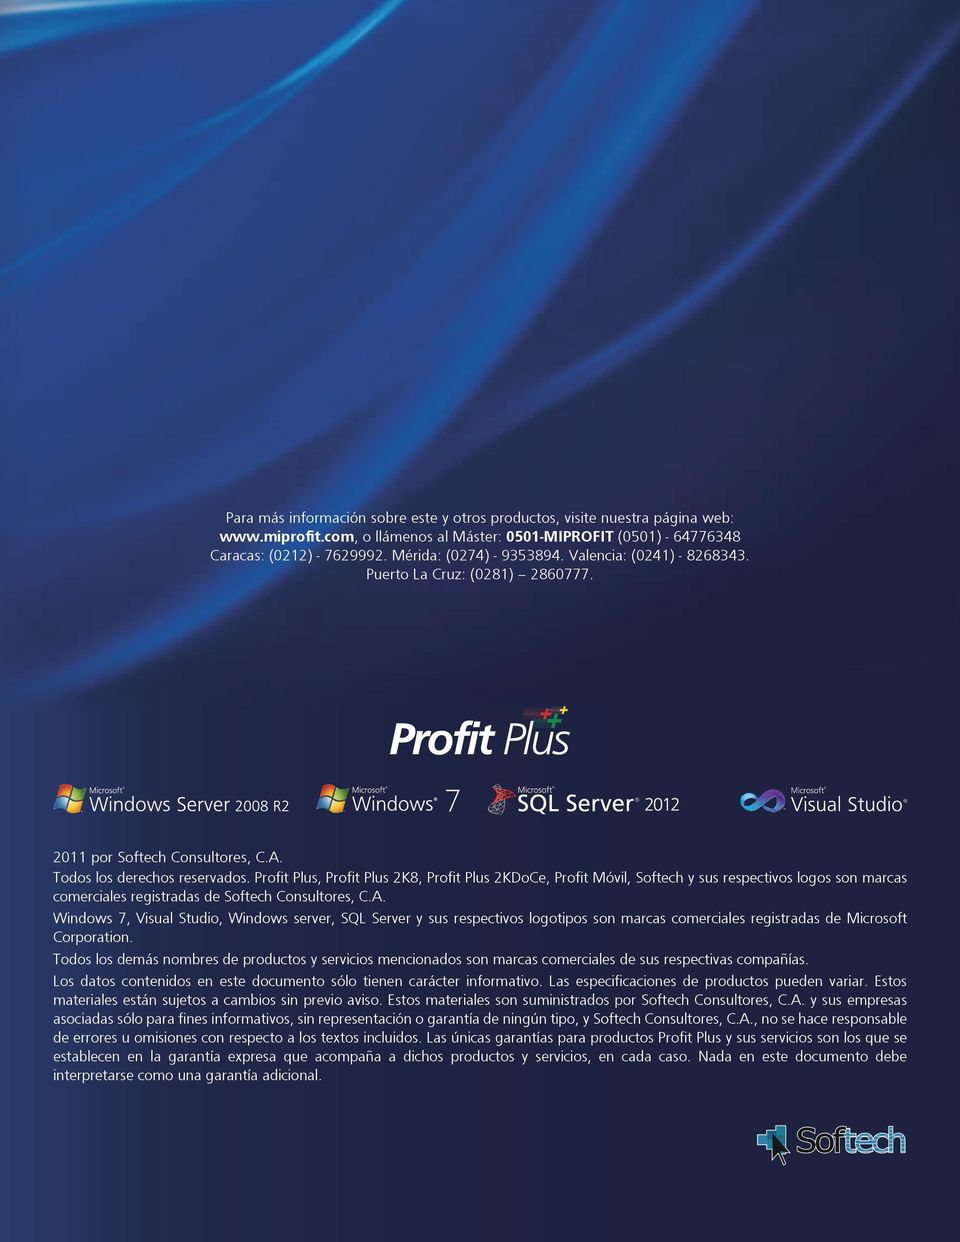 Profit Plus, Profit Plus 2K8, Profit Plus 2KDoCe, Profit Móvil, Softech y sus respectivos logos son marcas comerciales registradas de Softech Consultores, C.A.